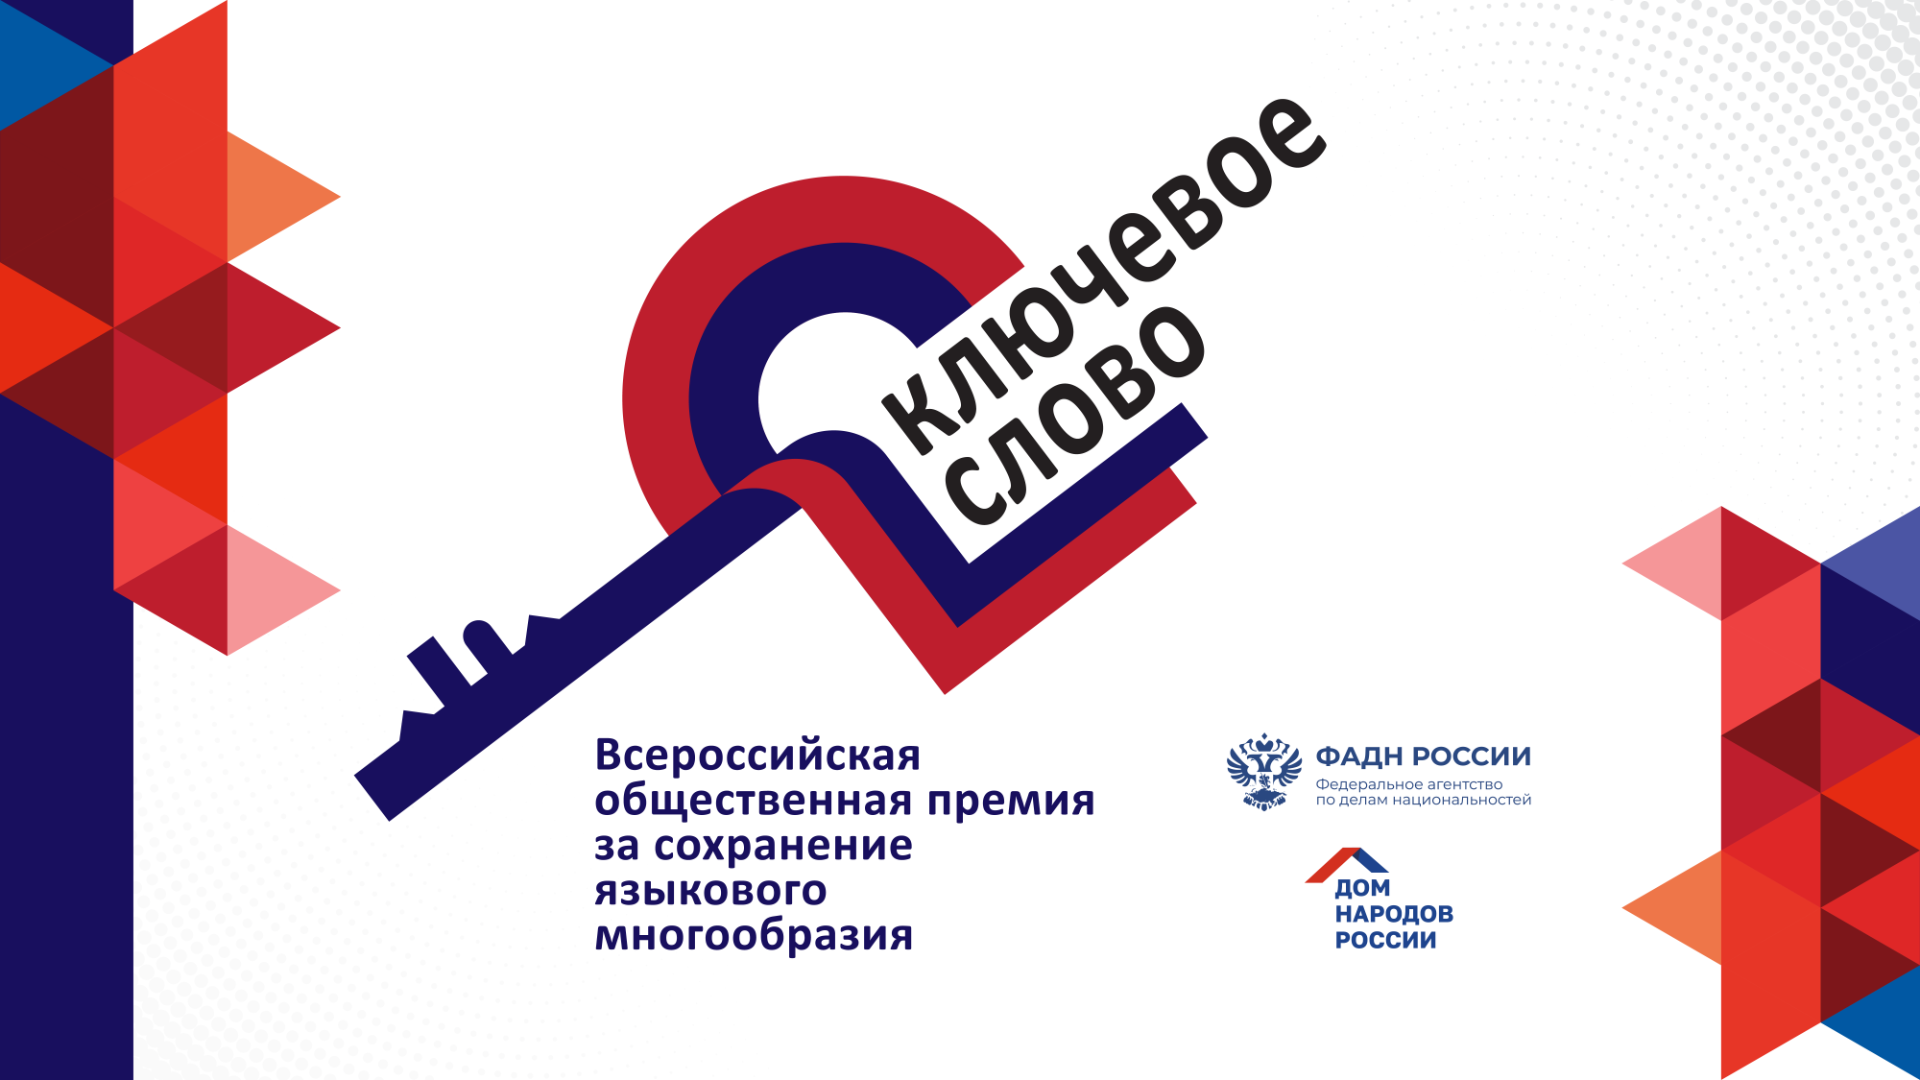 Белгородцев приглашают подавать заявки на соискание VI Всероссийской общественной премии «Ключевое слово»